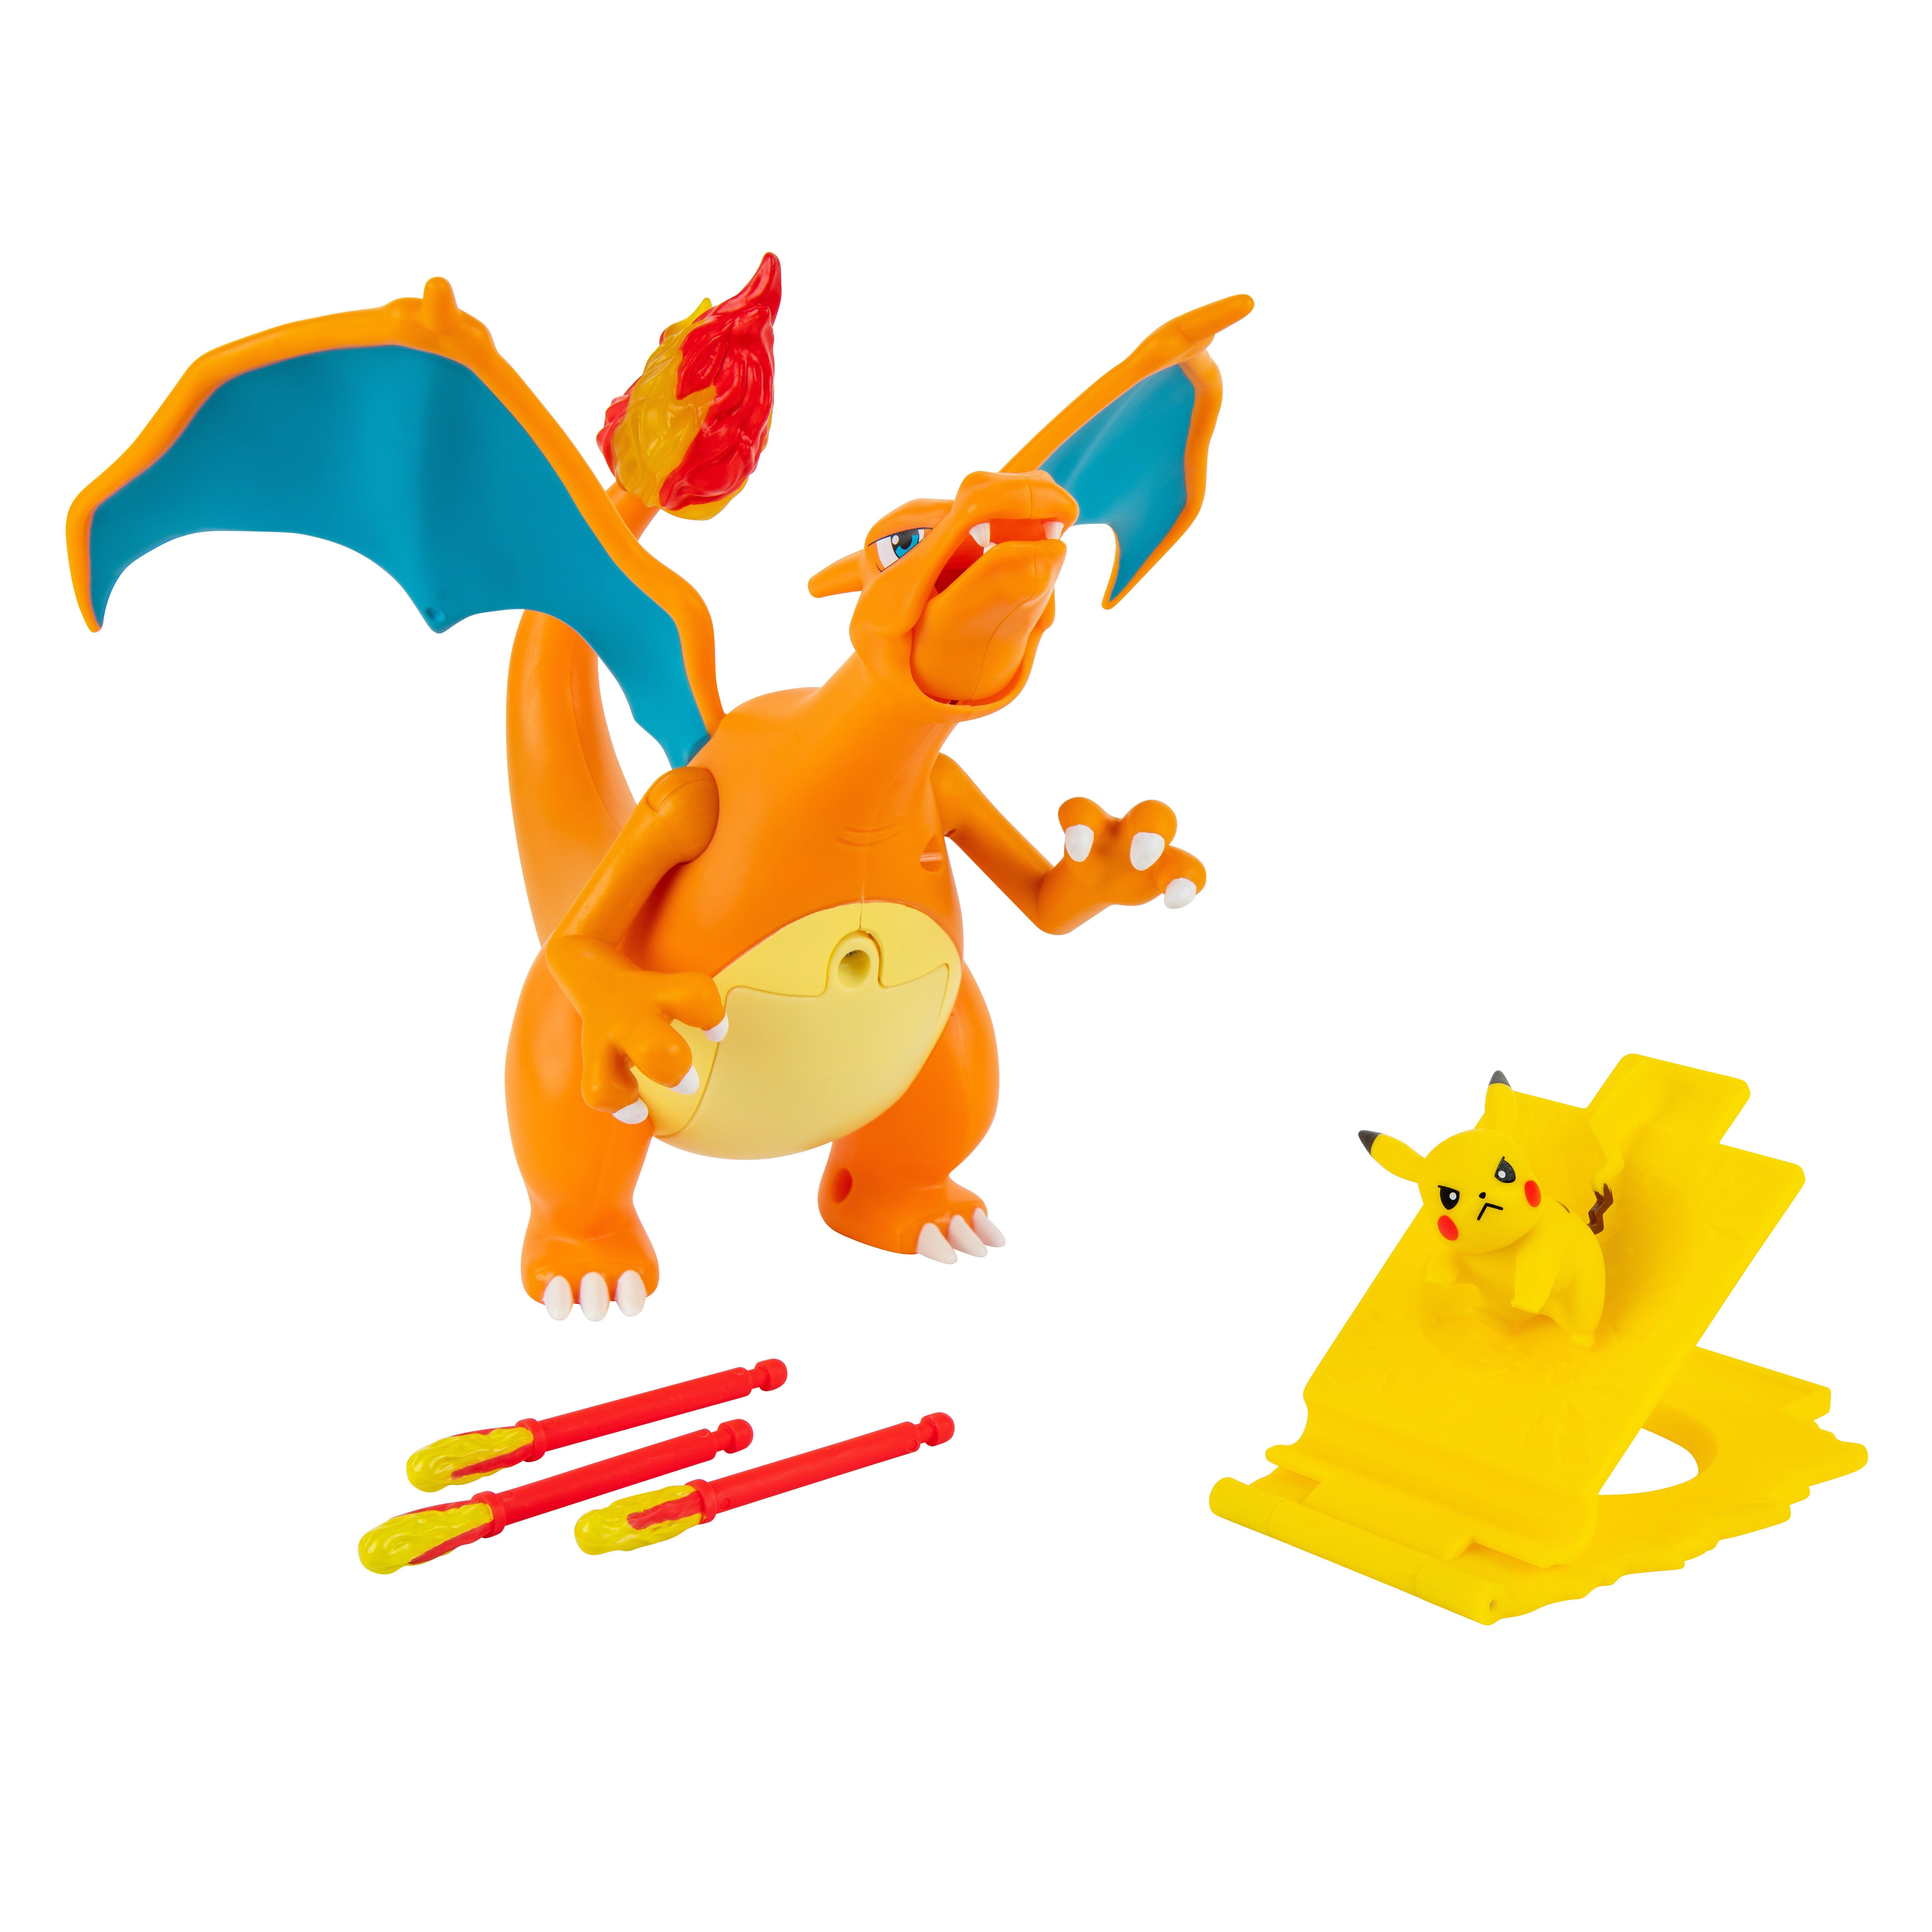 Buy MEGA Pokémon Action Figure Pikachu Collectible Building Toy